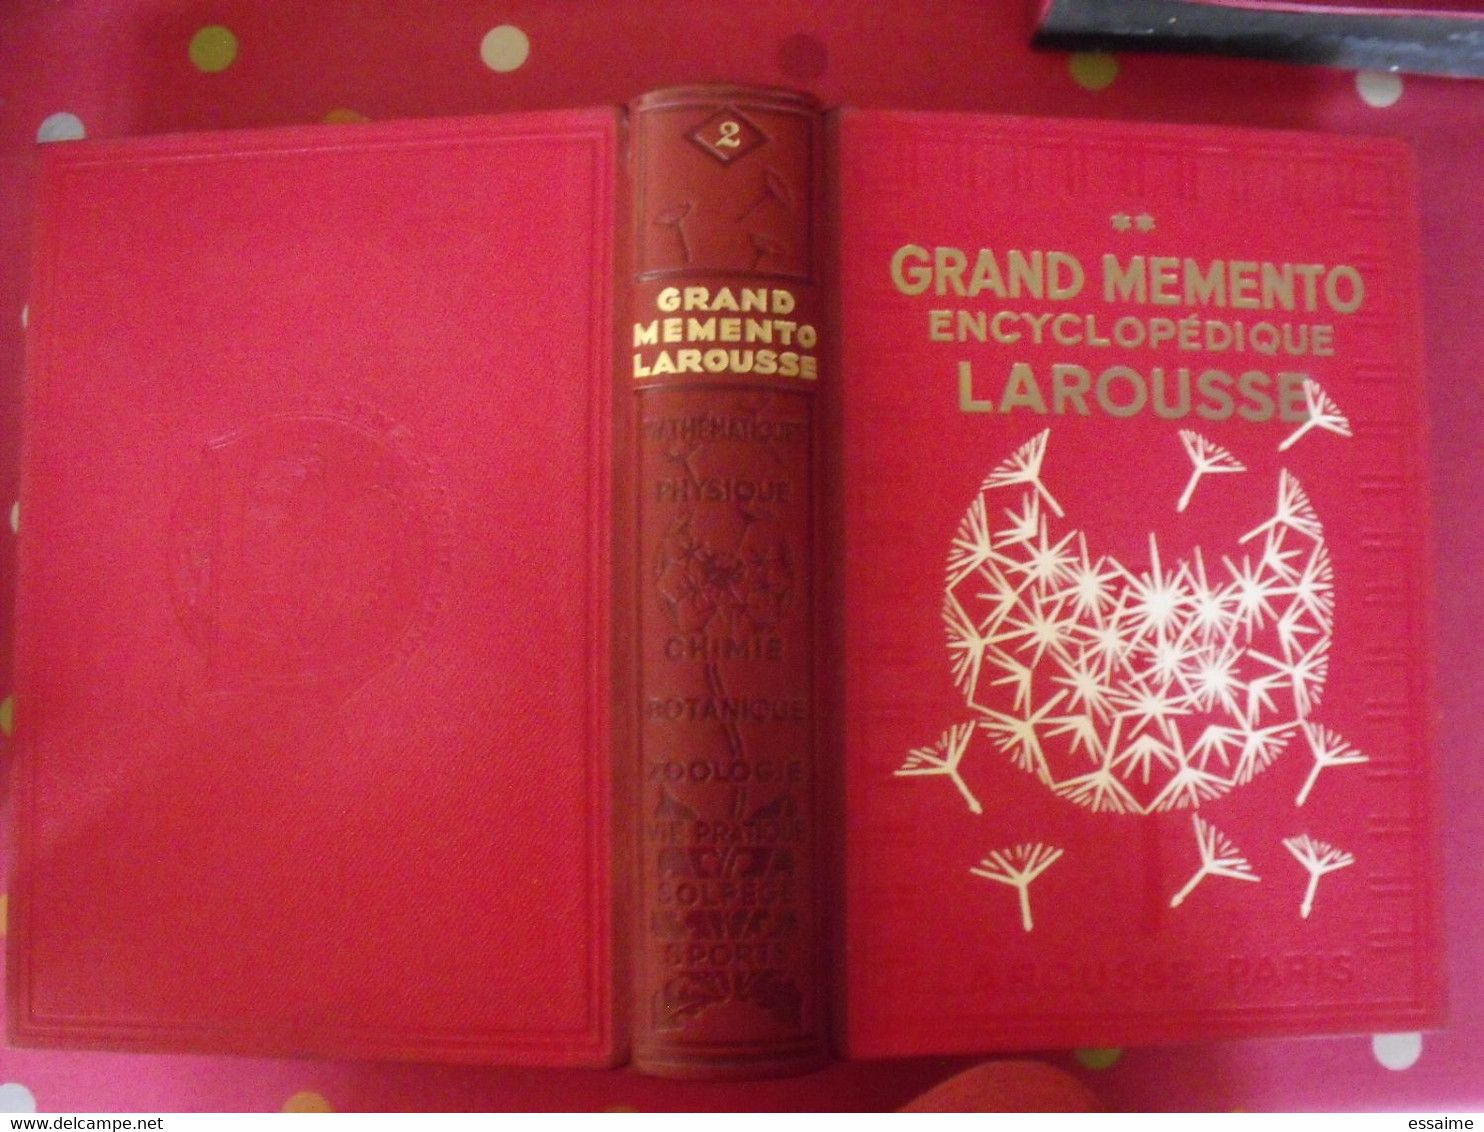 Grand Memento Larousse (en 2 Tomes). 1936. Geographie Histoire Beaux-arts Physique Chimie Zoologie Sports Botanique - Dictionnaires